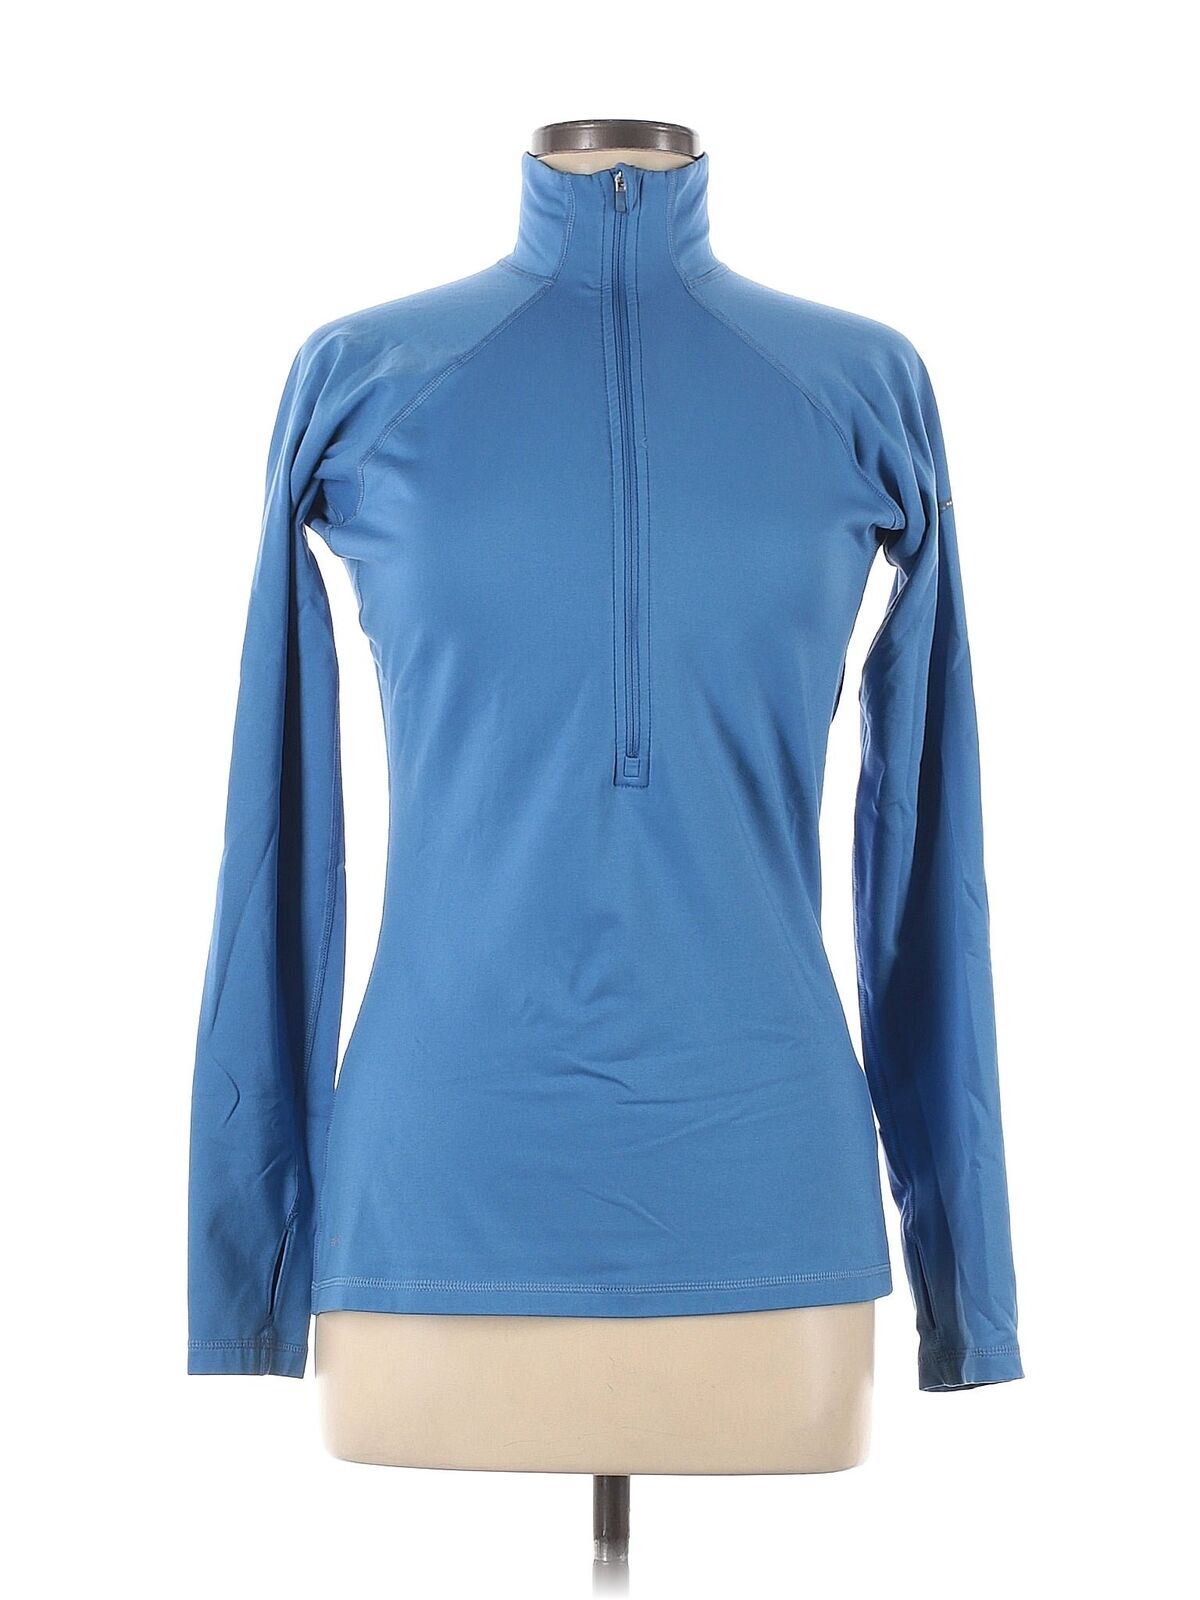 Nike Women Blue Track Jacket M - image 1